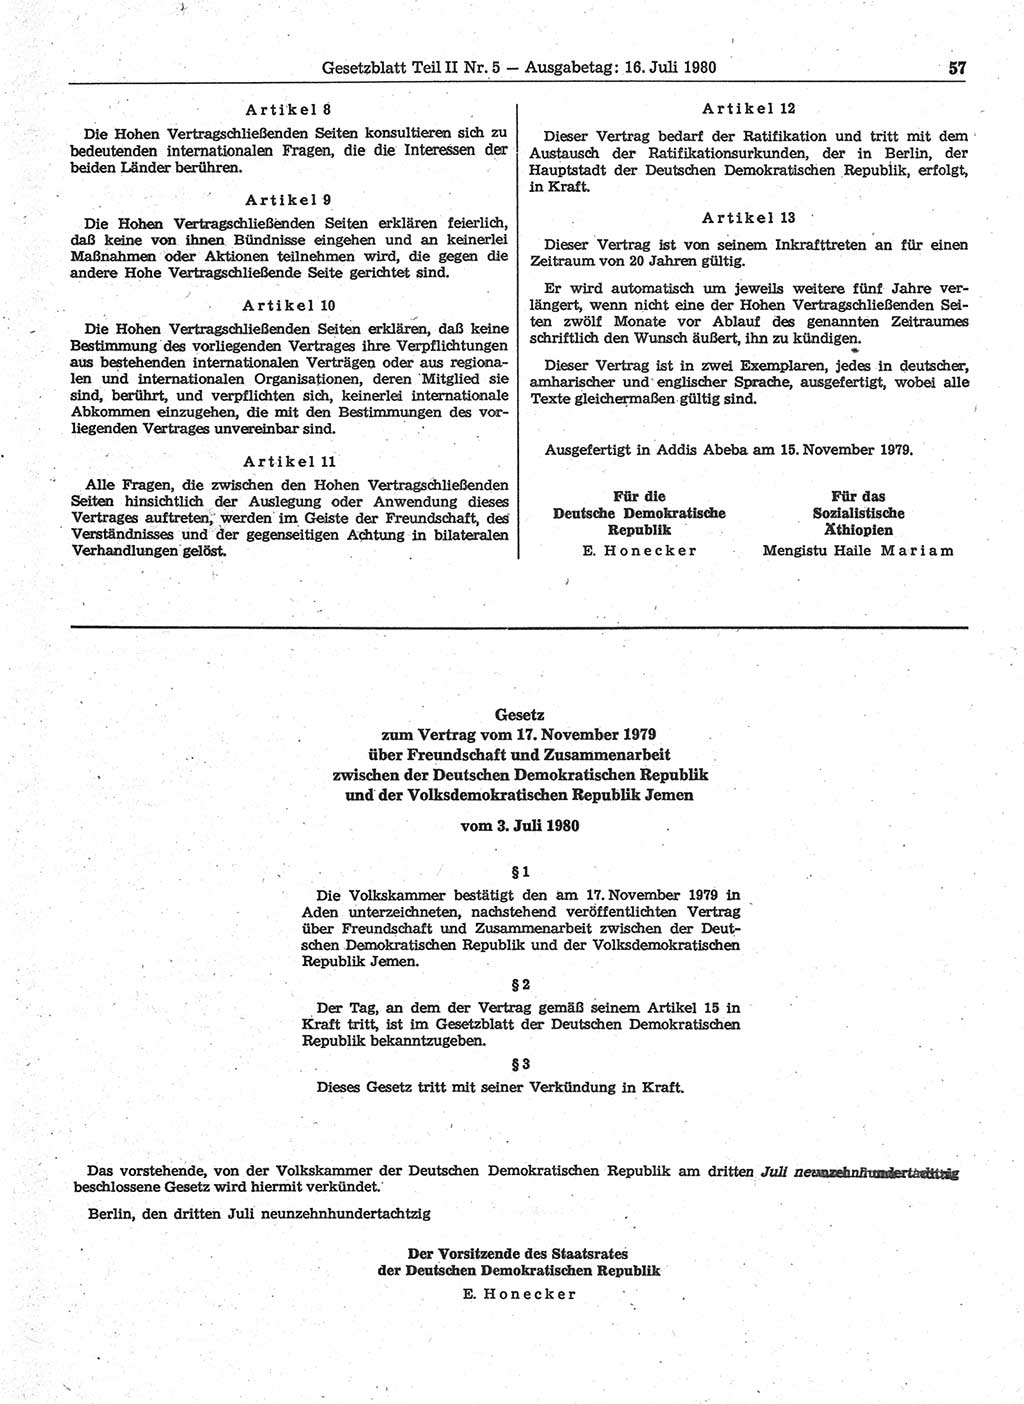 Gesetzblatt (GBl.) der Deutschen Demokratischen Republik (DDR) Teil ⅠⅠ 1980, Seite 57 (GBl. DDR ⅠⅠ 1980, S. 57)